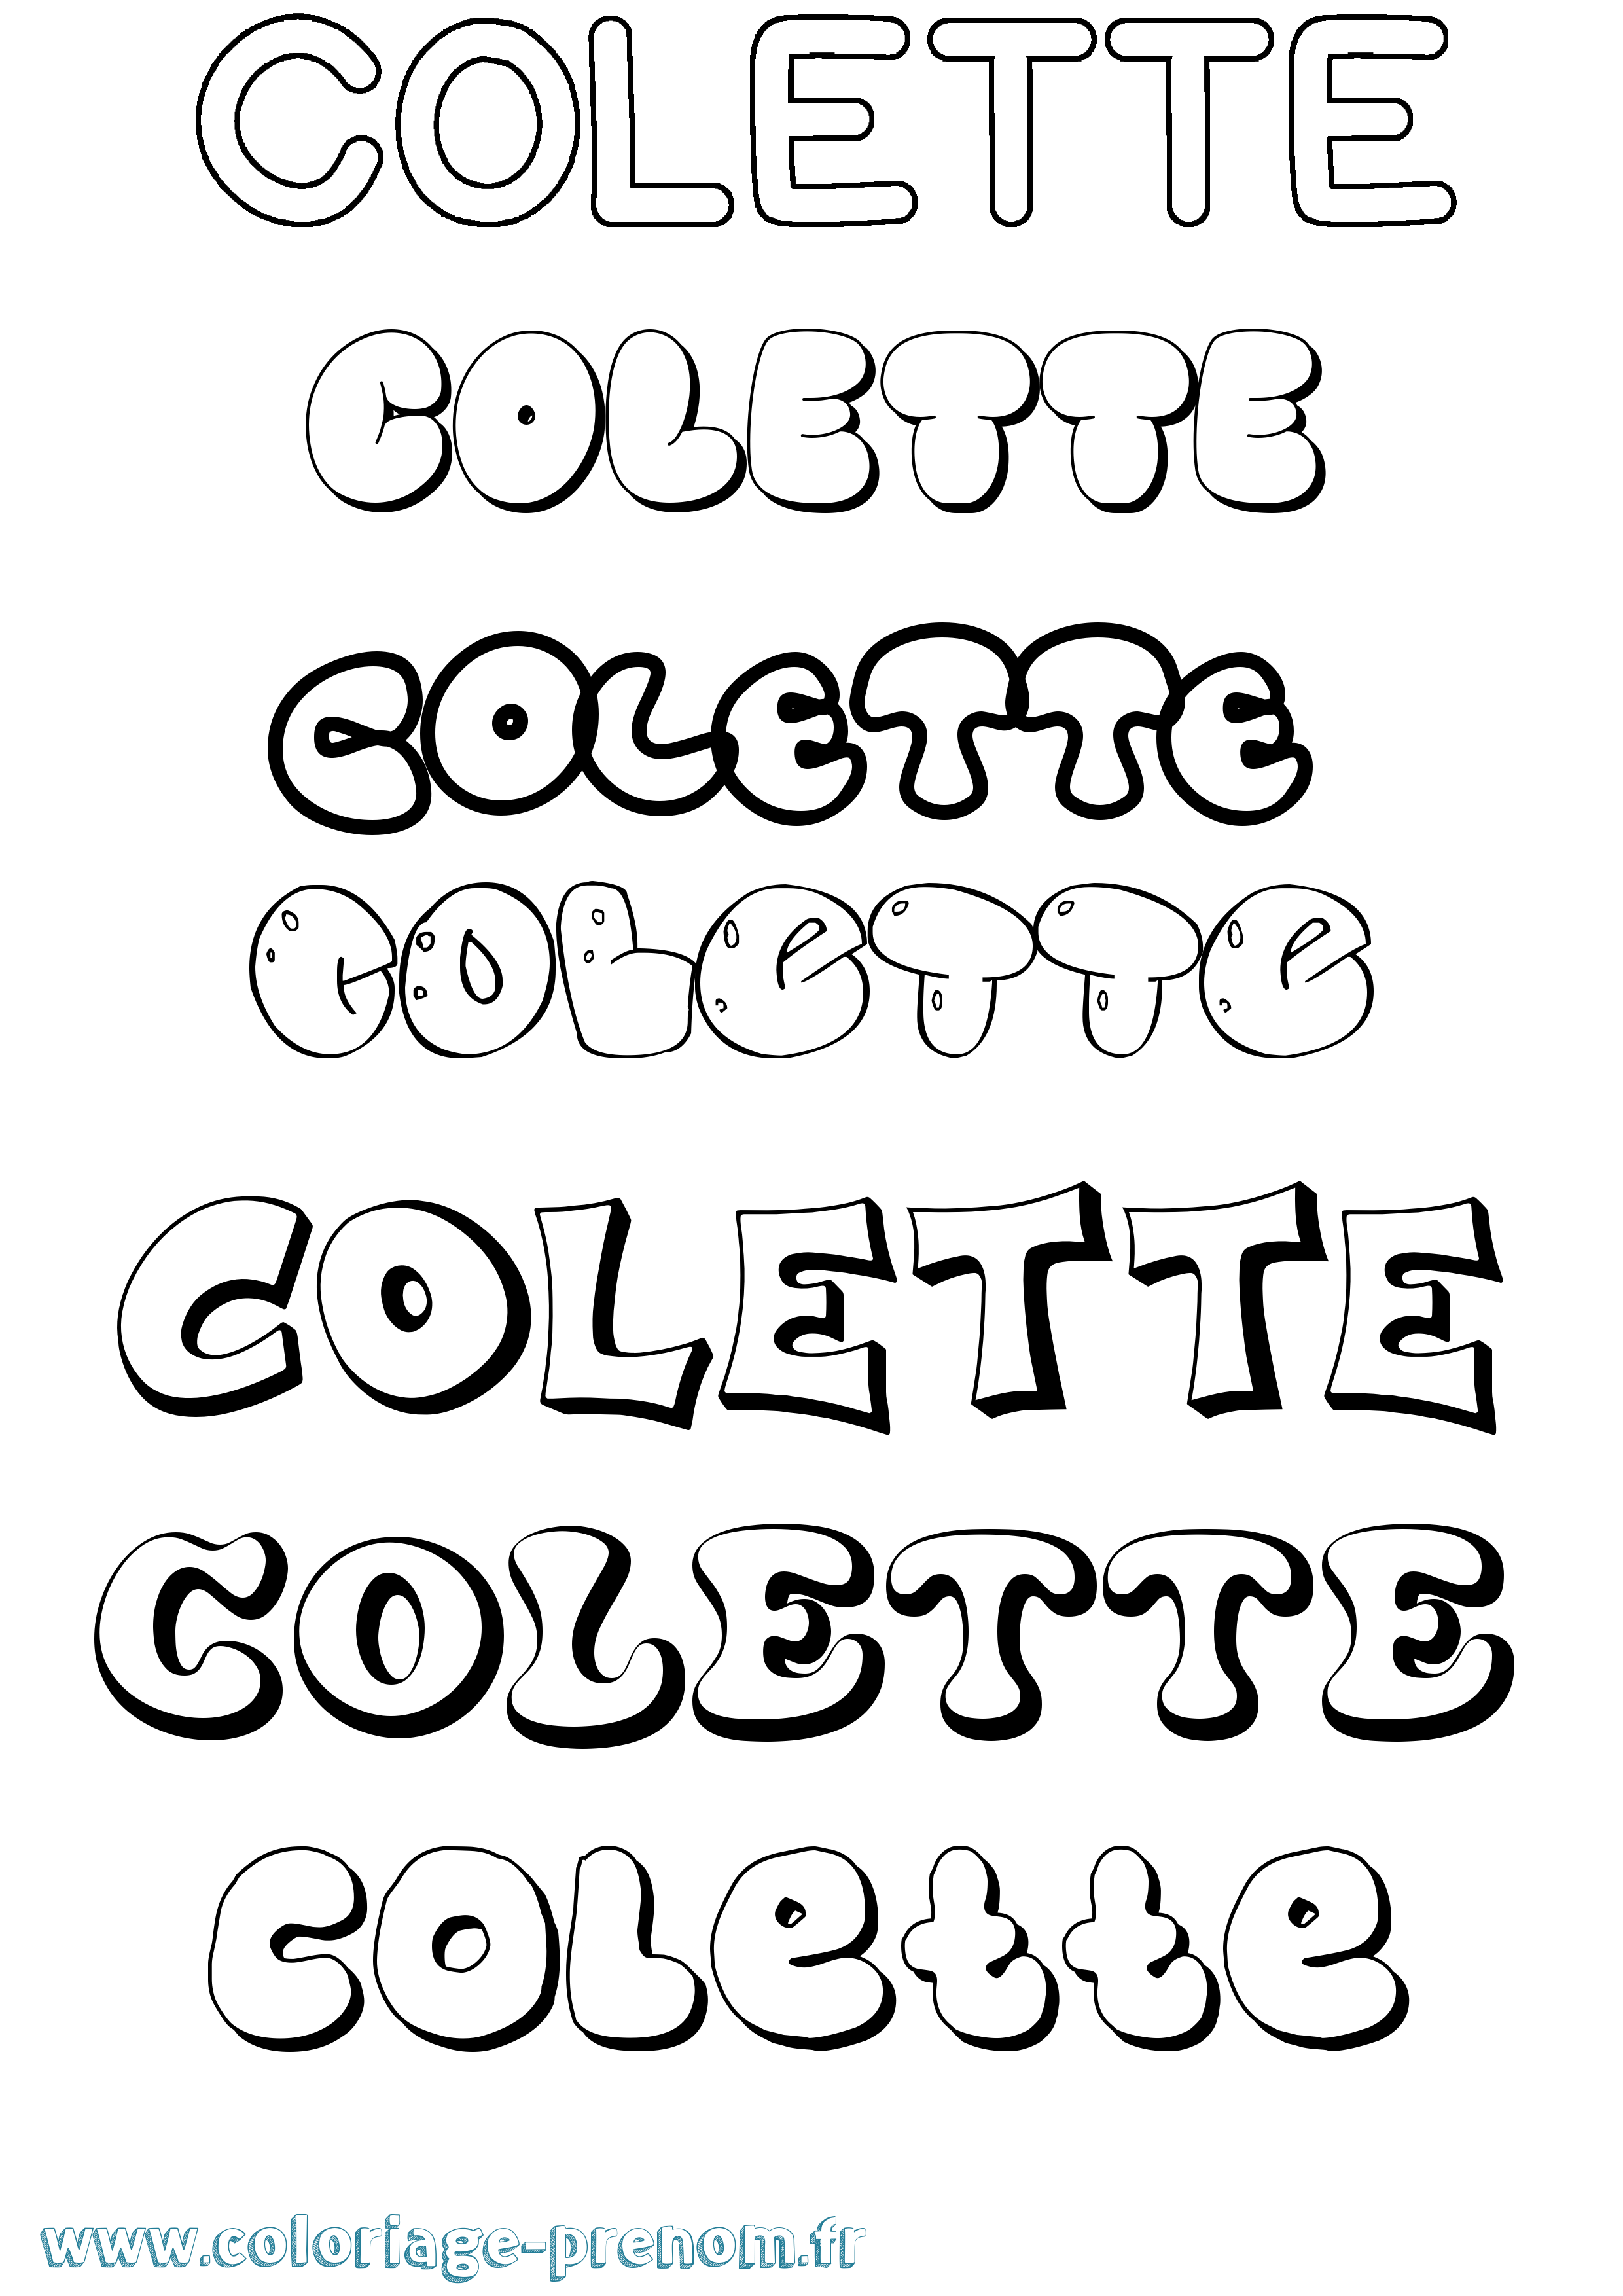 Coloriage prénom Colette Bubble